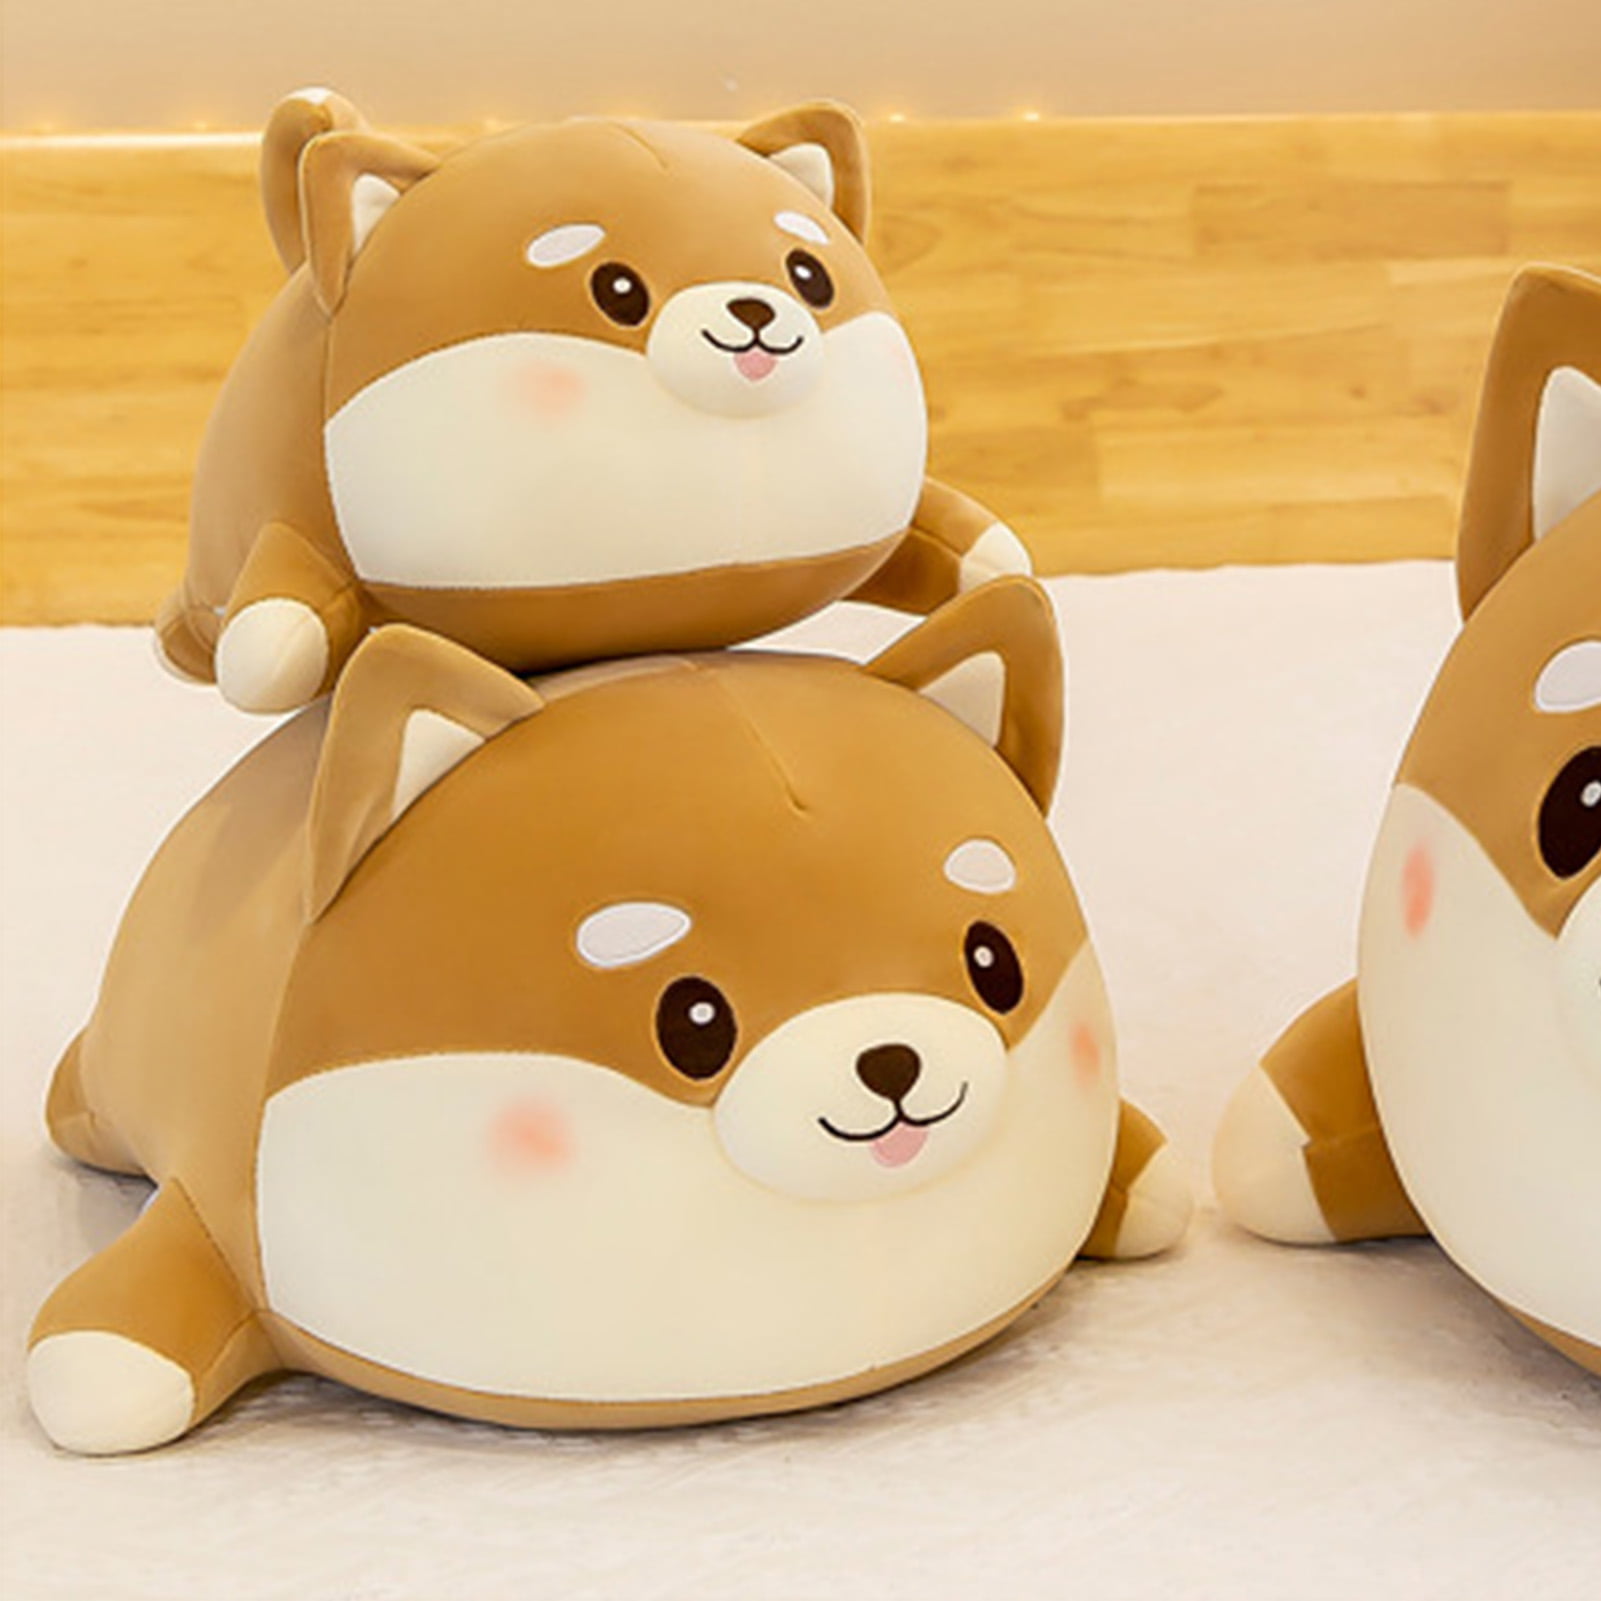 35cm Cute Fat Shiba Inu Dog Plush Toys Stuffed Soft Kawaii Animal Cartoon Pillow 